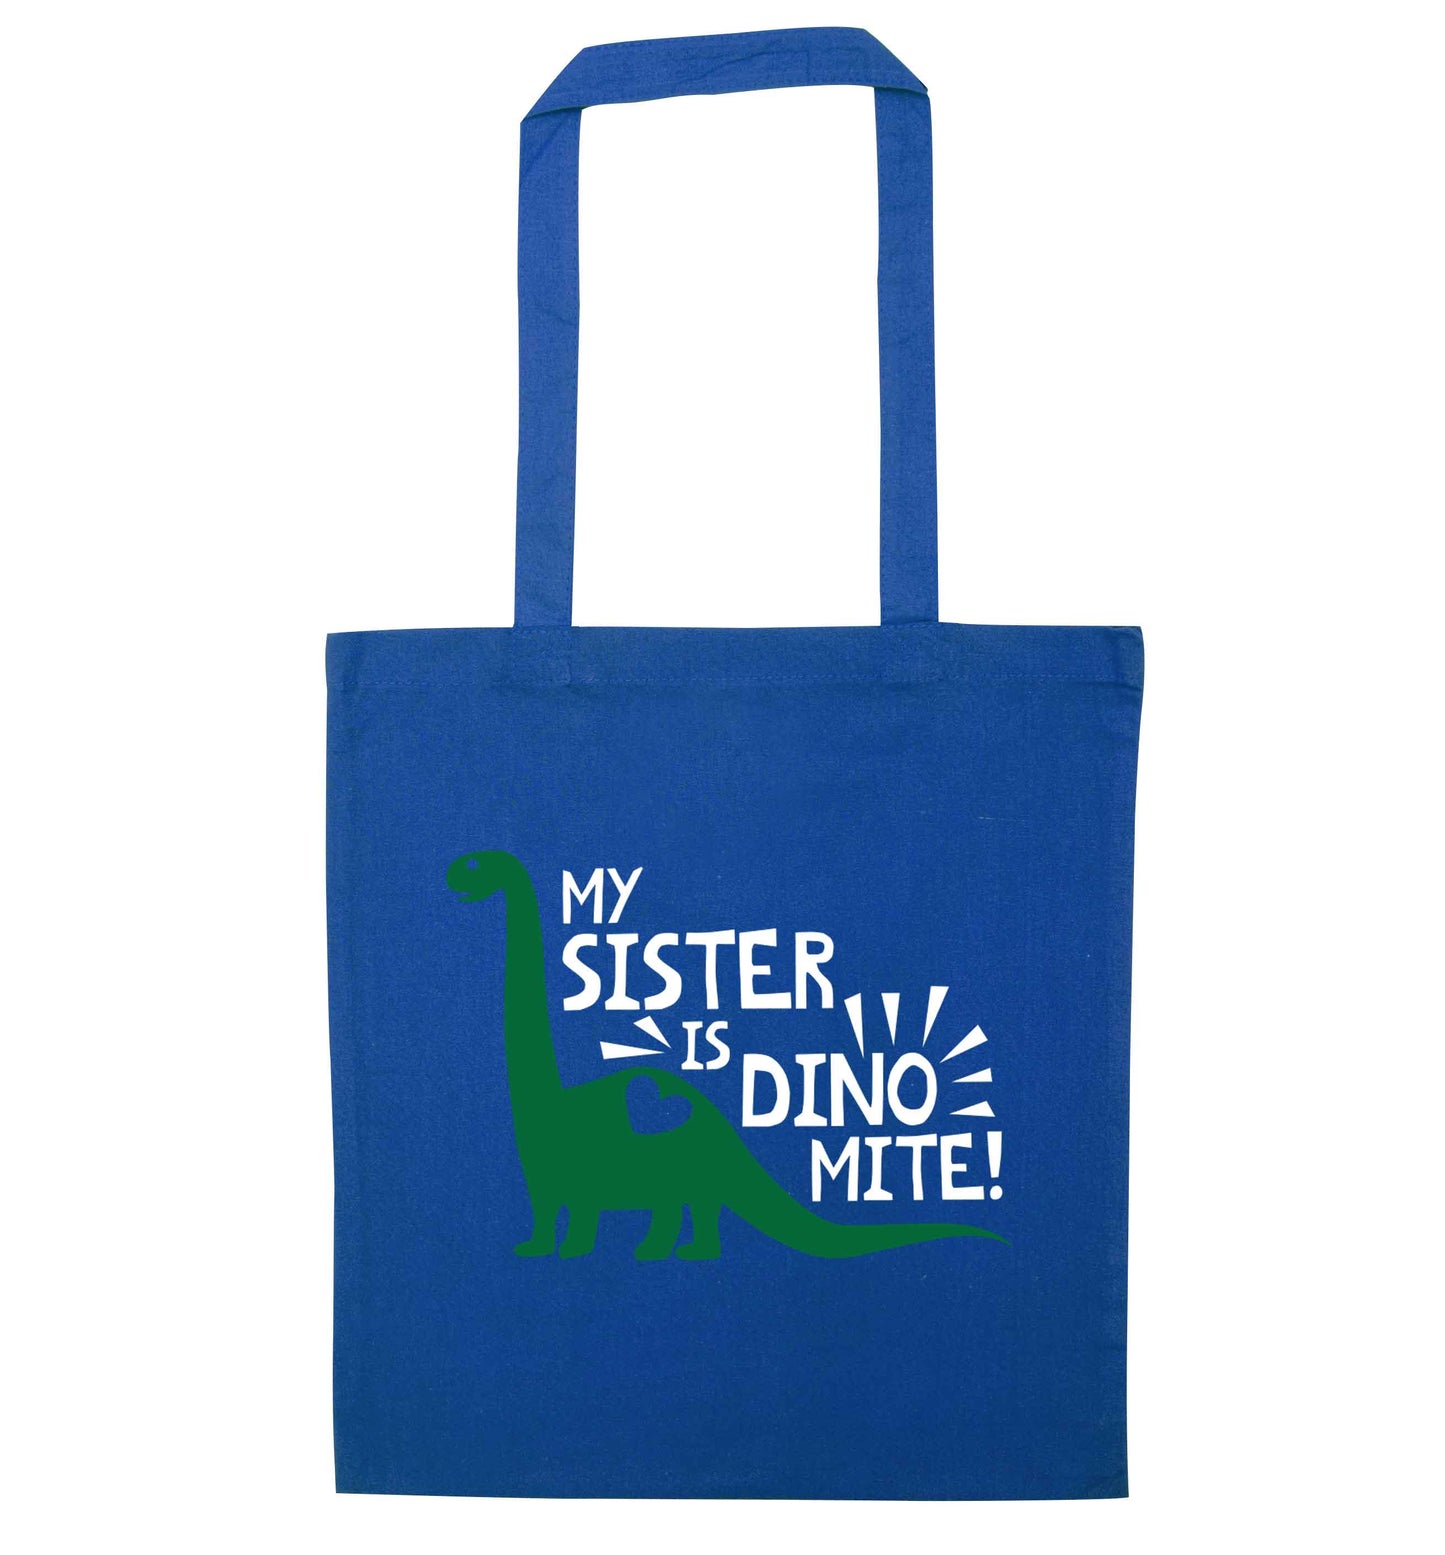 My sister is dinomite! blue tote bag